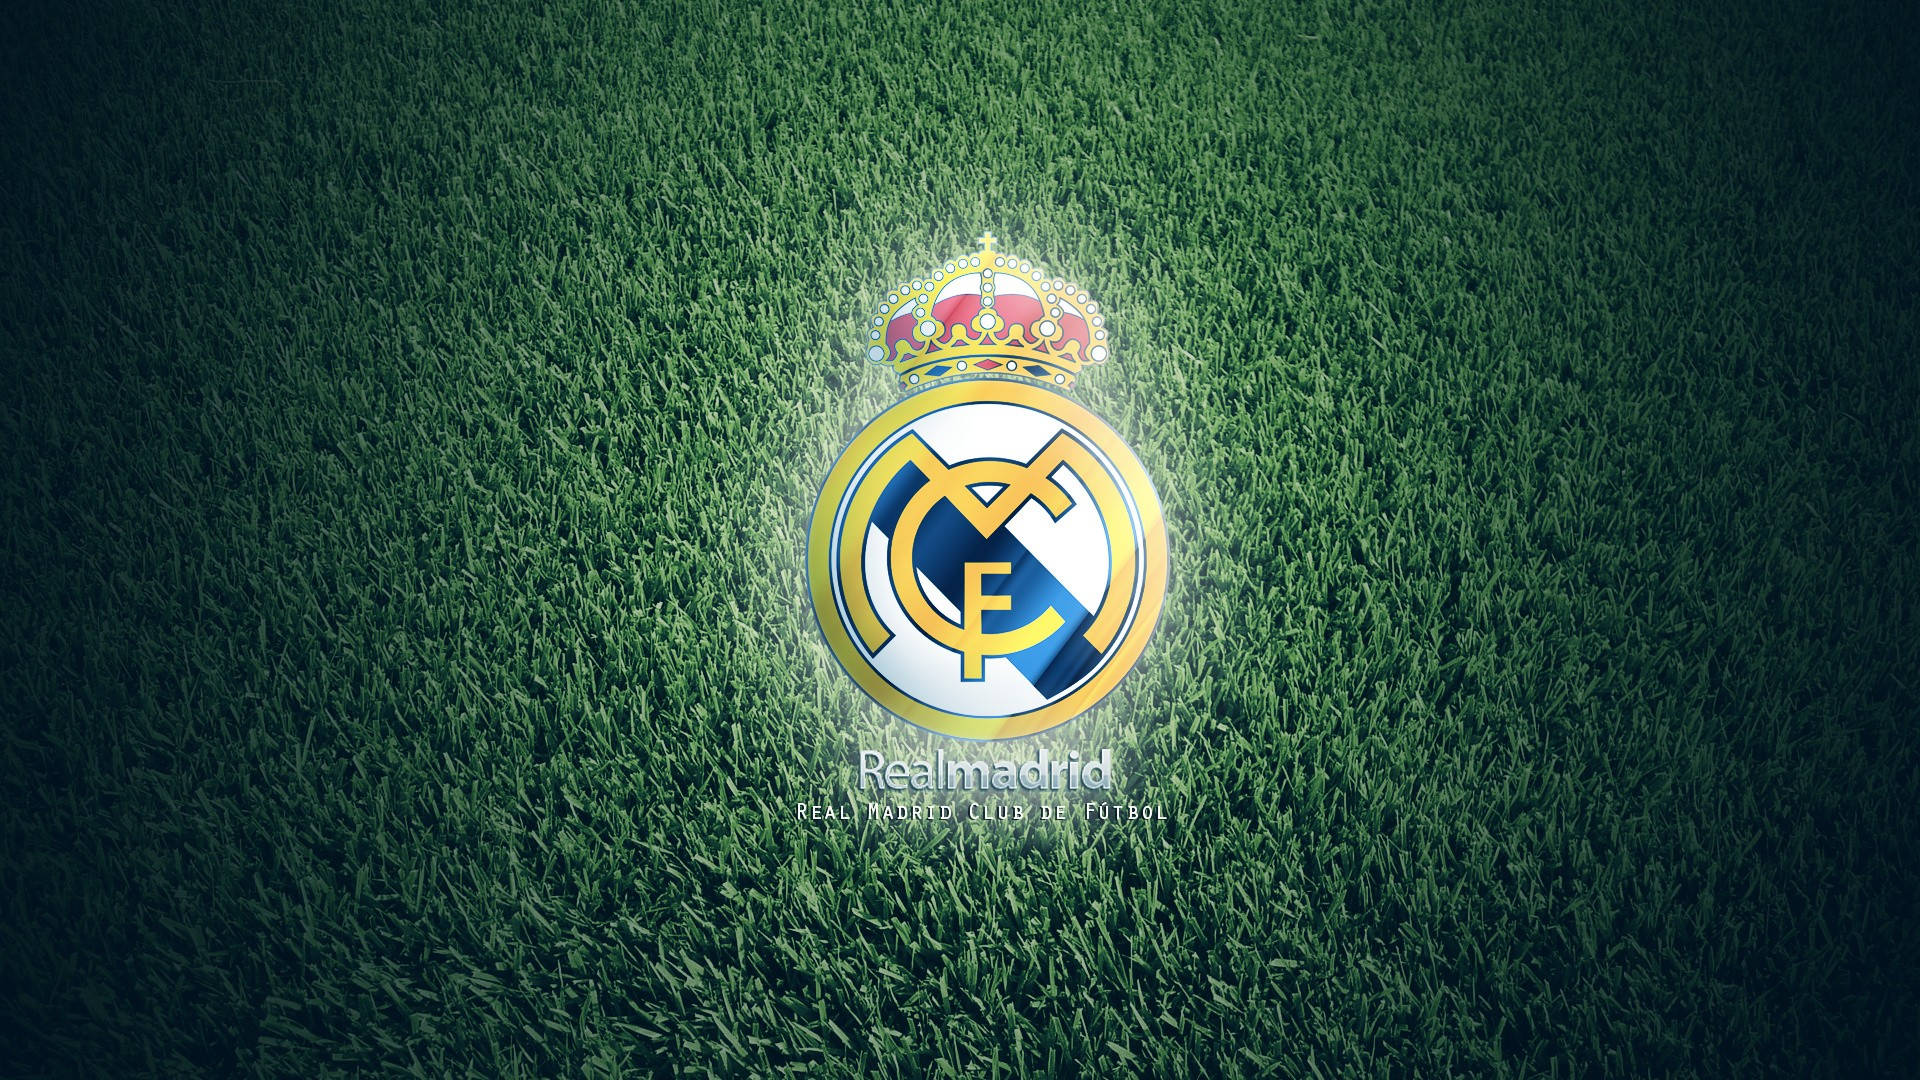 Real Madrid Cf Grassy Logo Wallpaper